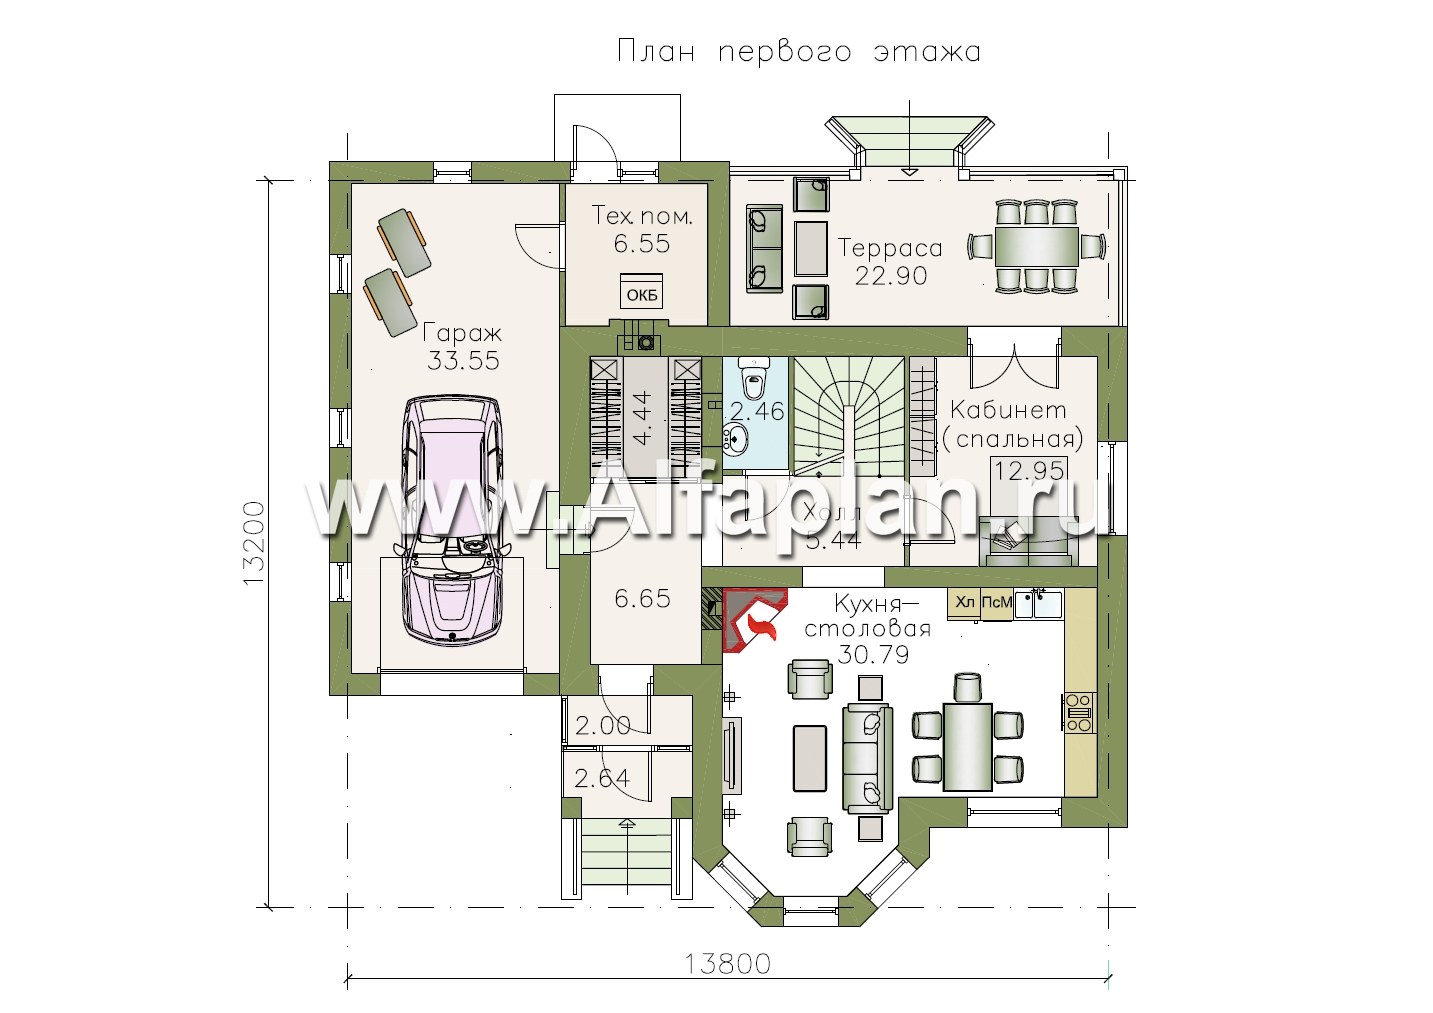 Изображение плана проекта Проект двухэтажного дома из газобетона «Шевалье» с кабинетом на 1 эт, с эркером и гаражом №1